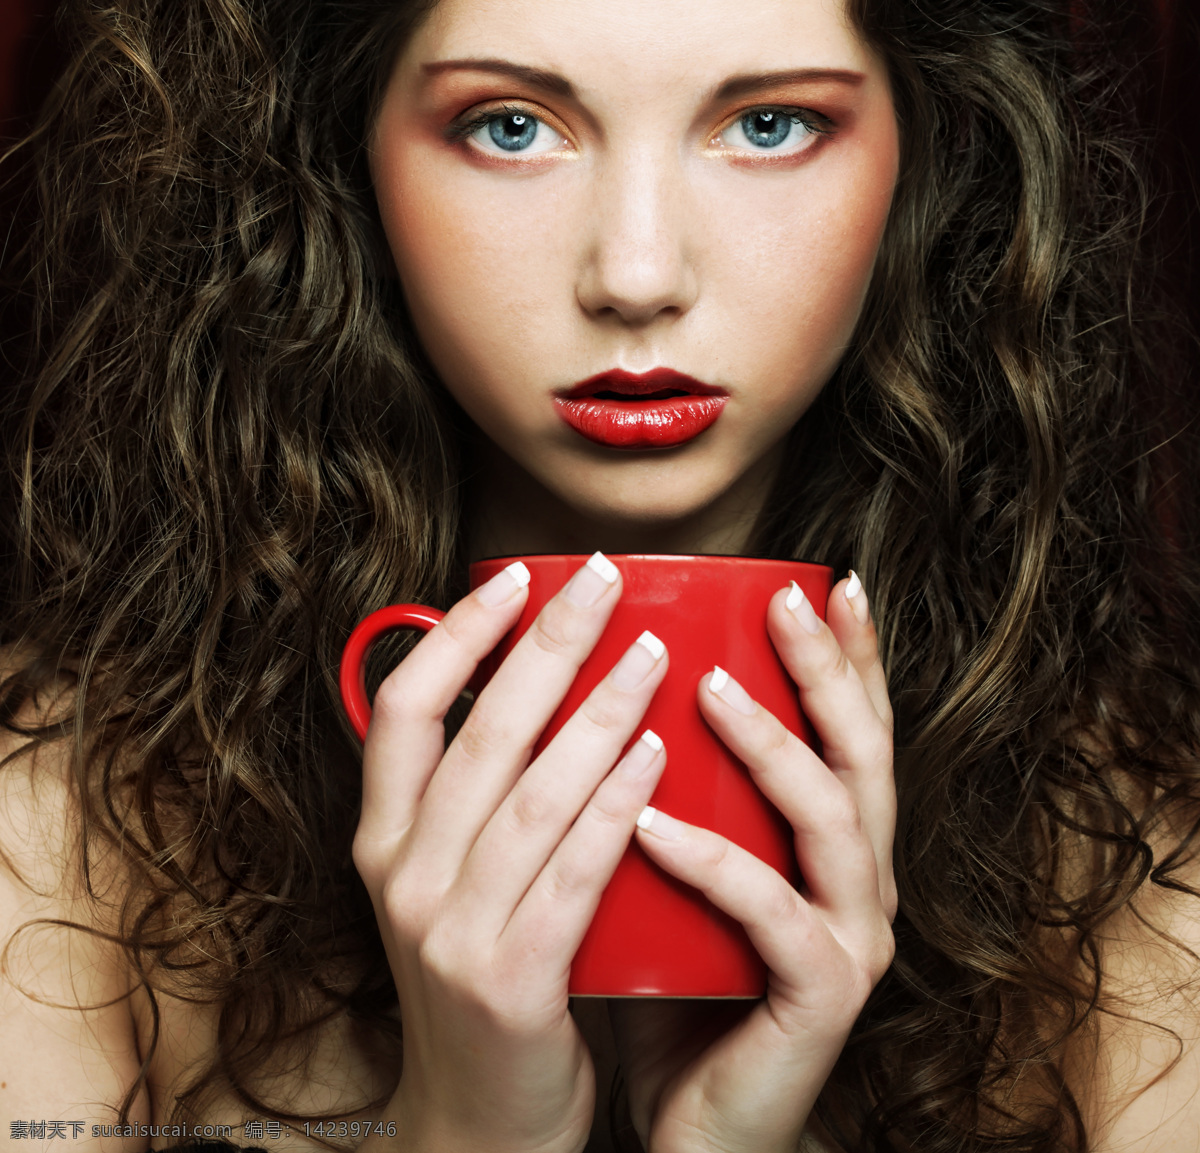 咖啡杯 美女图片 红唇 女人 美女 外国女人 外国人物 人物图片